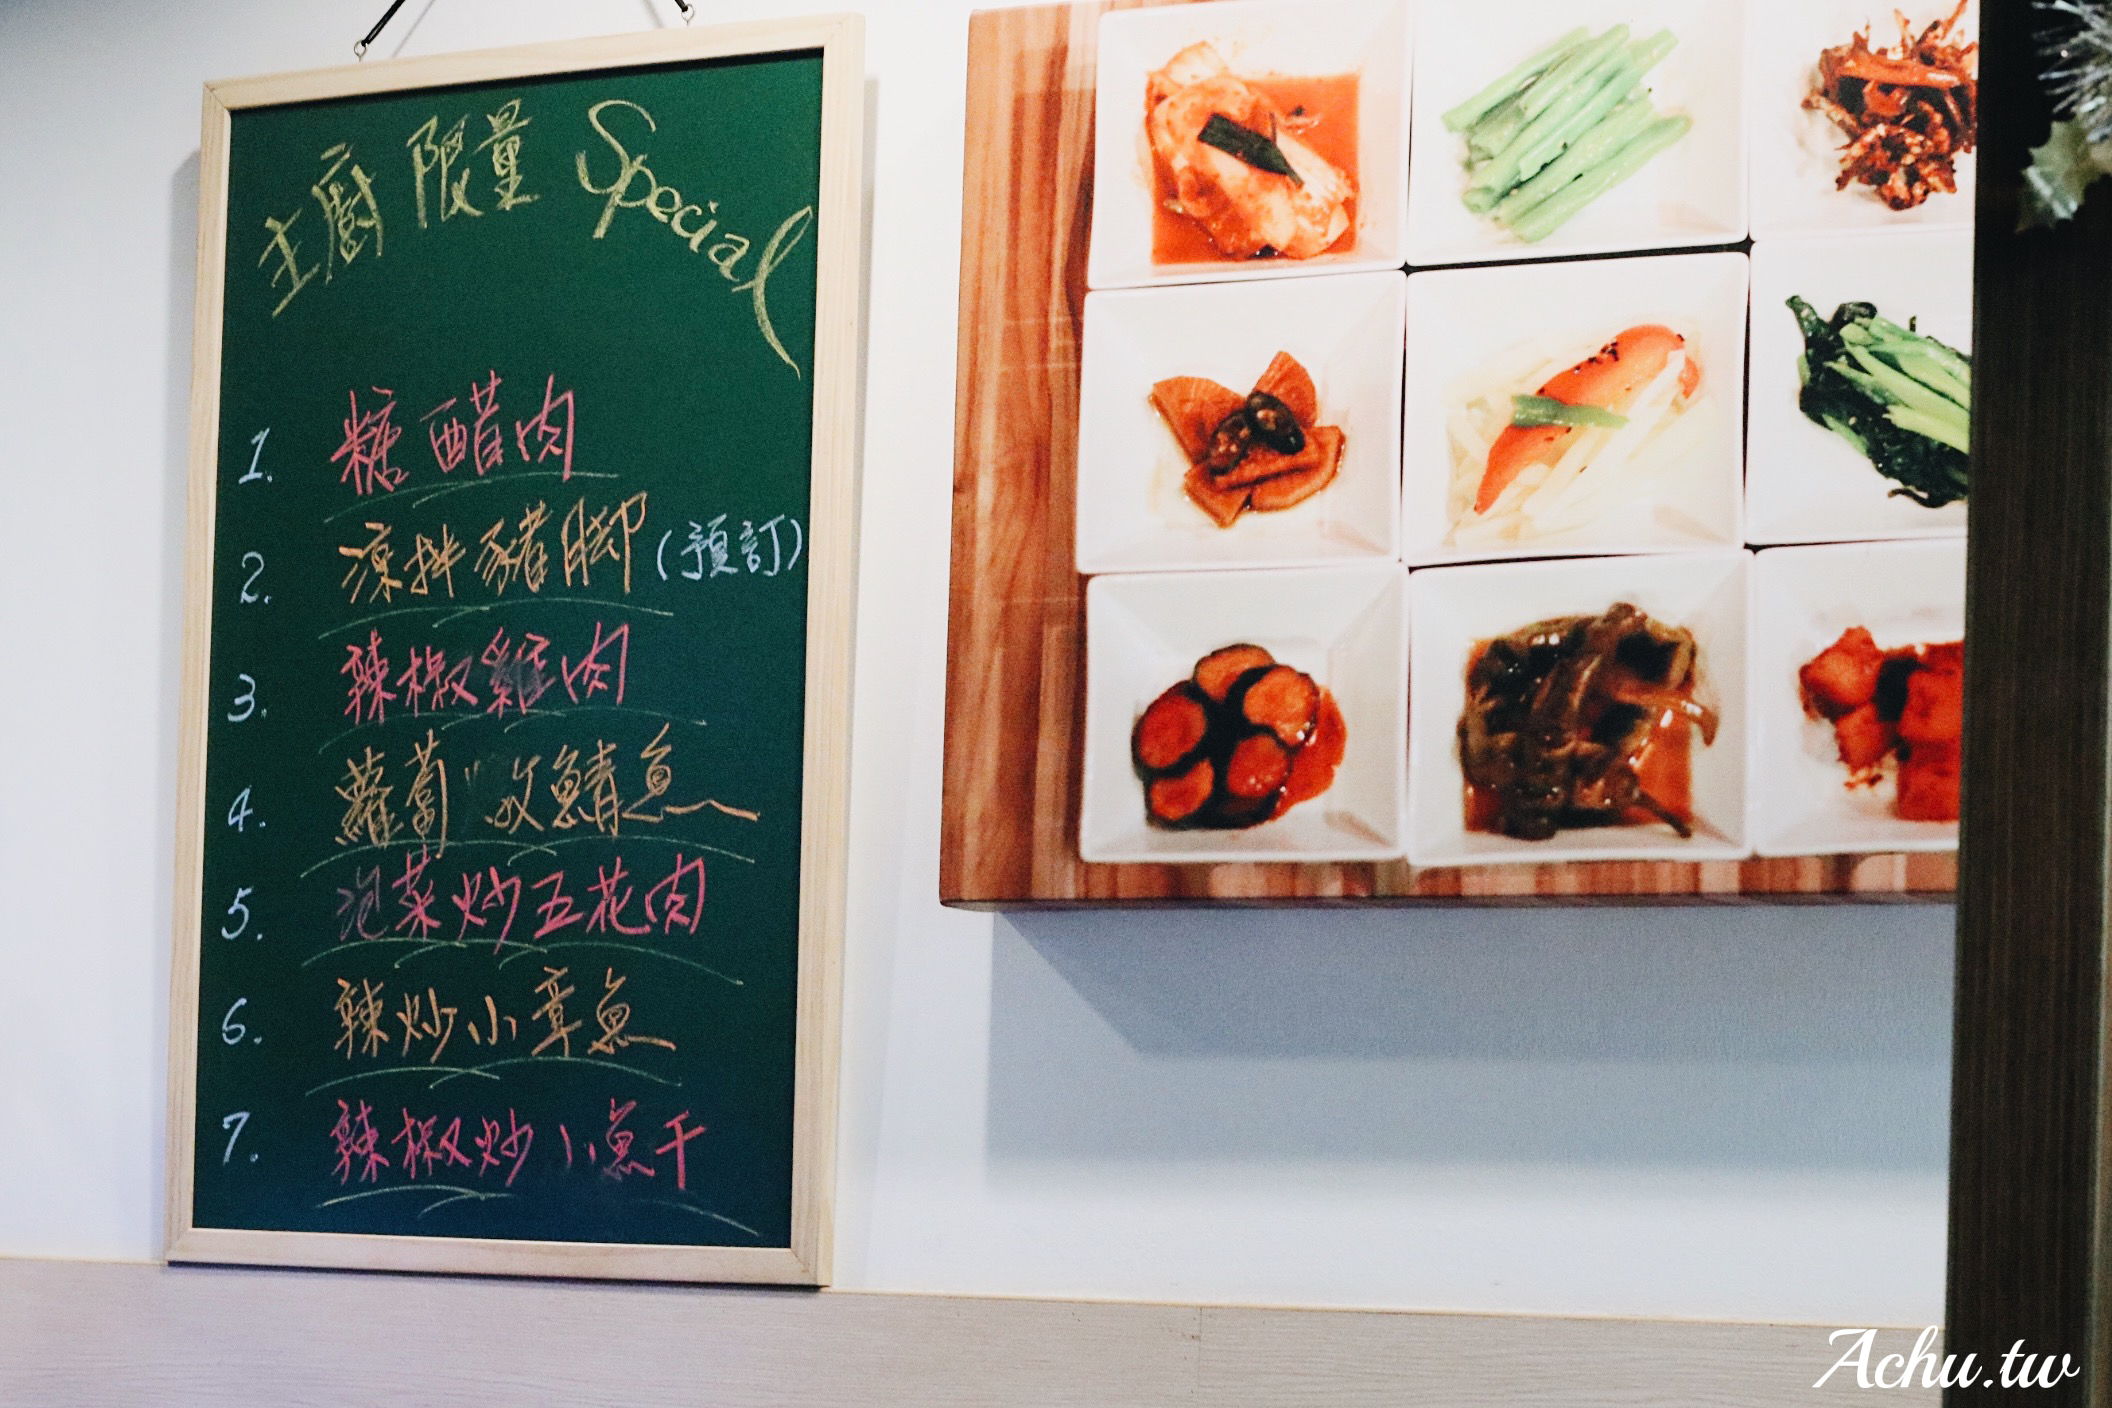 【六張犁美食】韓豐豆腐煲 五種小菜無限續盤 (菜單)